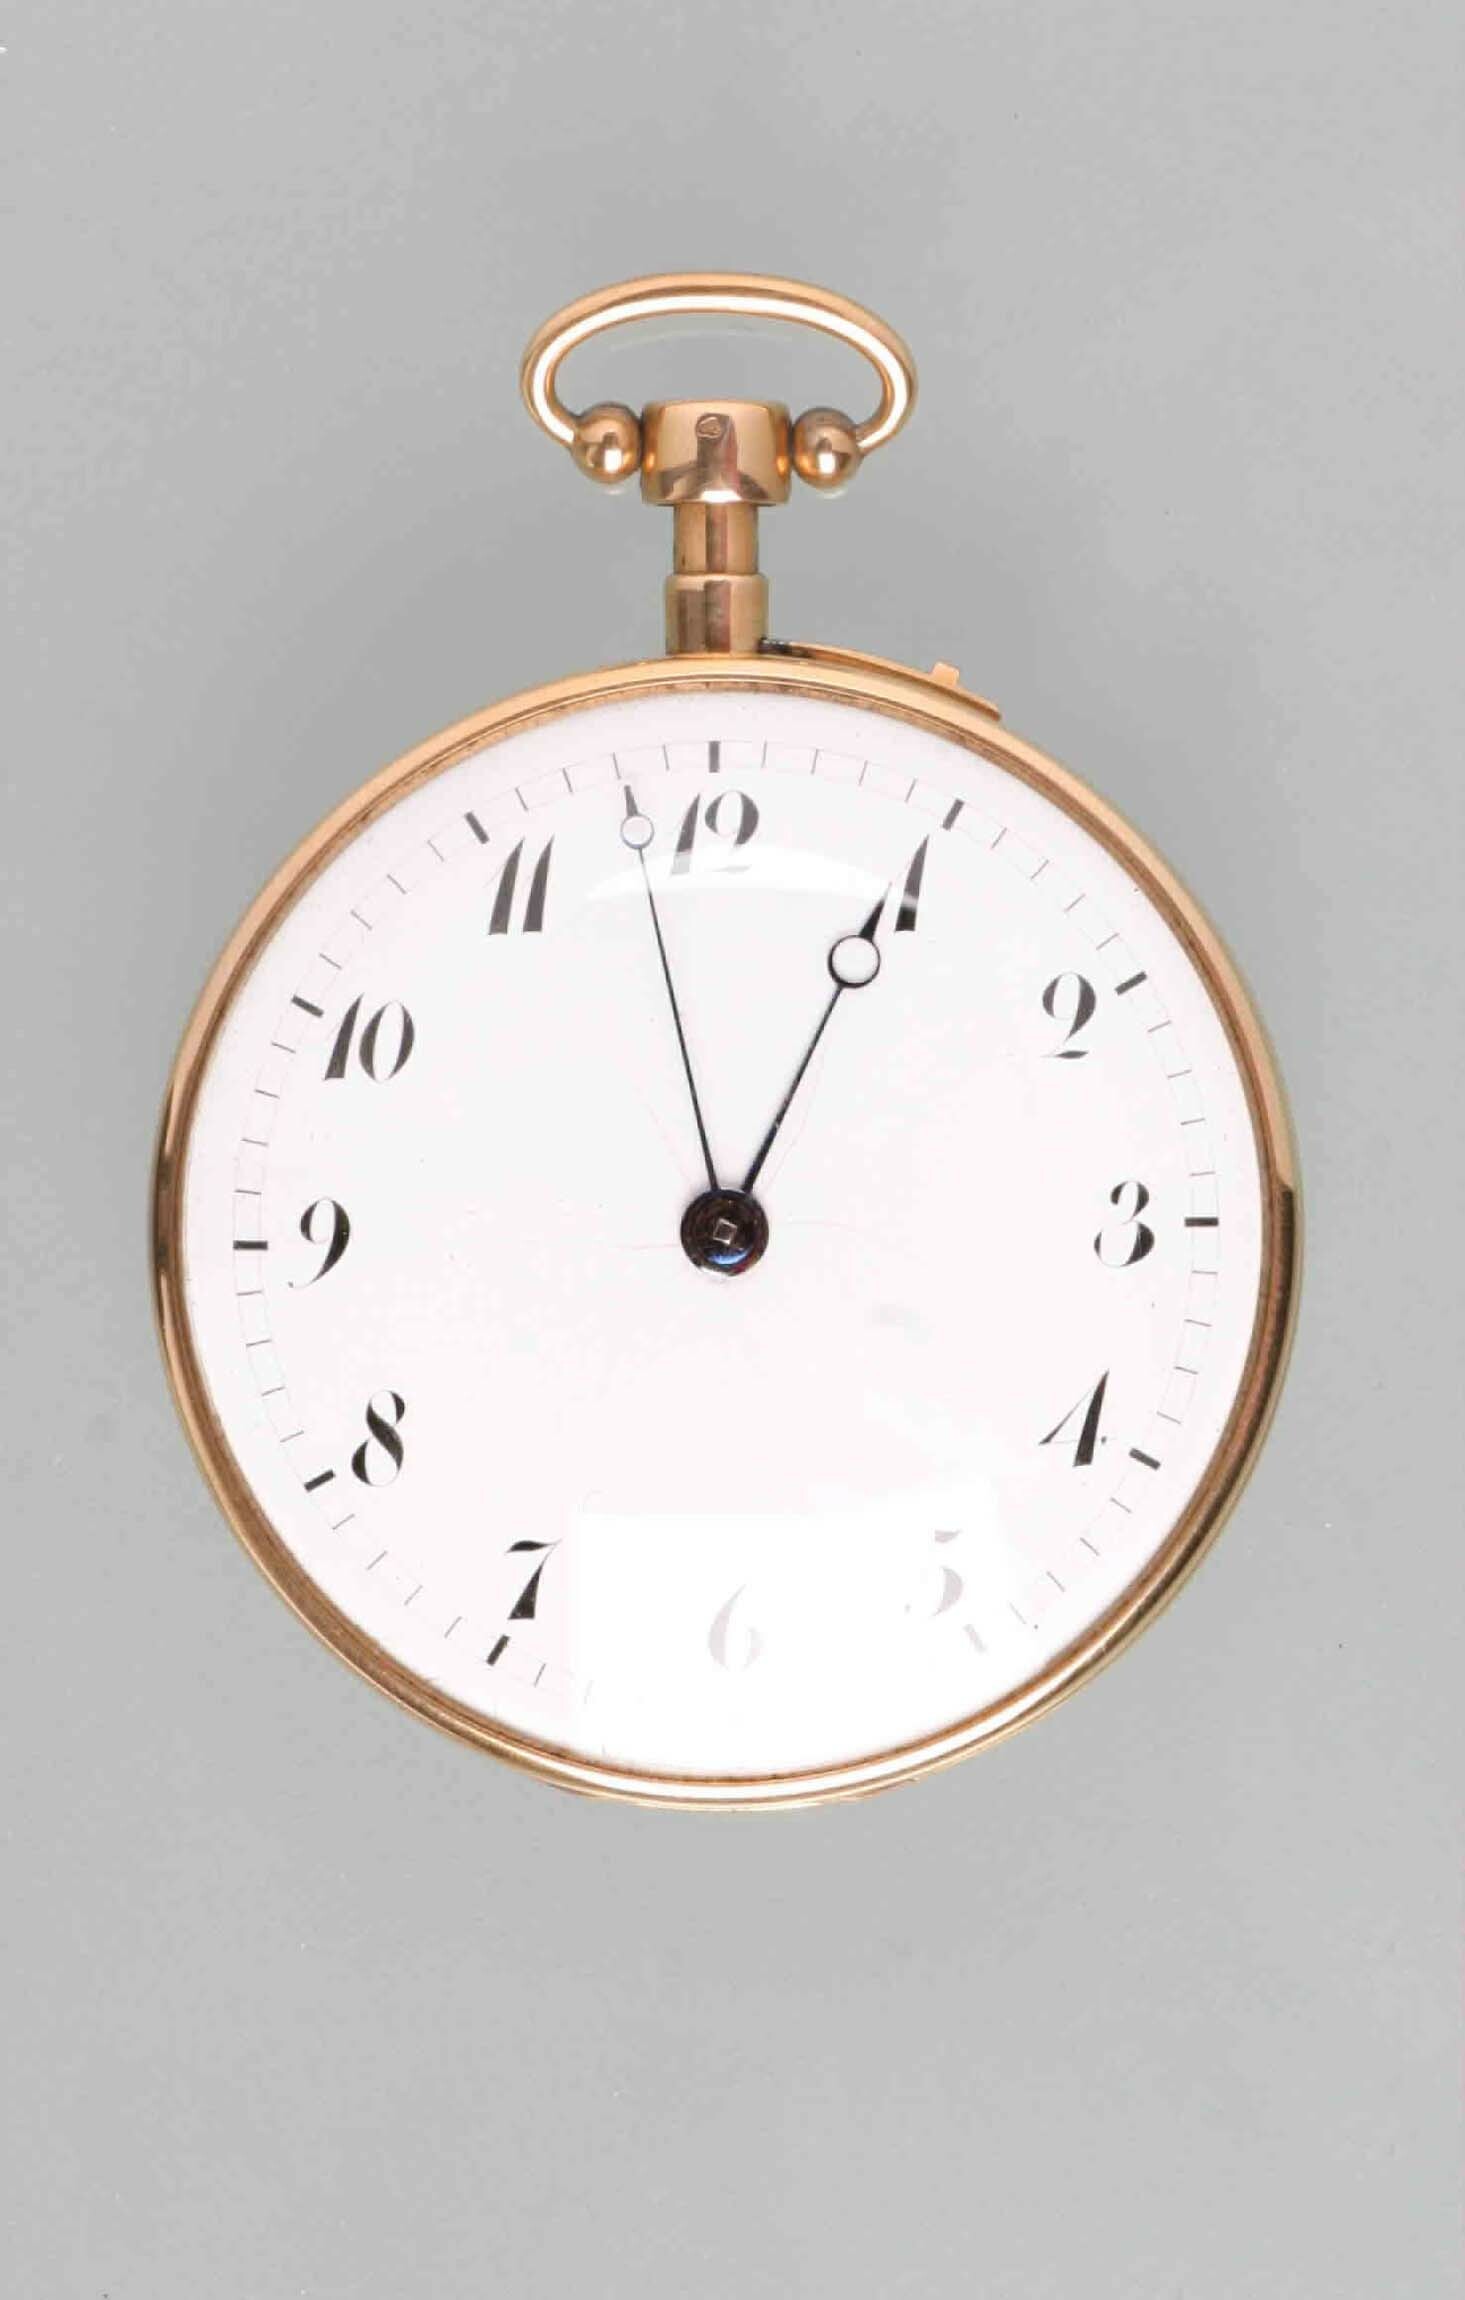 Taschenuhr, Bailly, Paris, um 1800 (Deutsches Uhrenmuseum CC BY-SA)